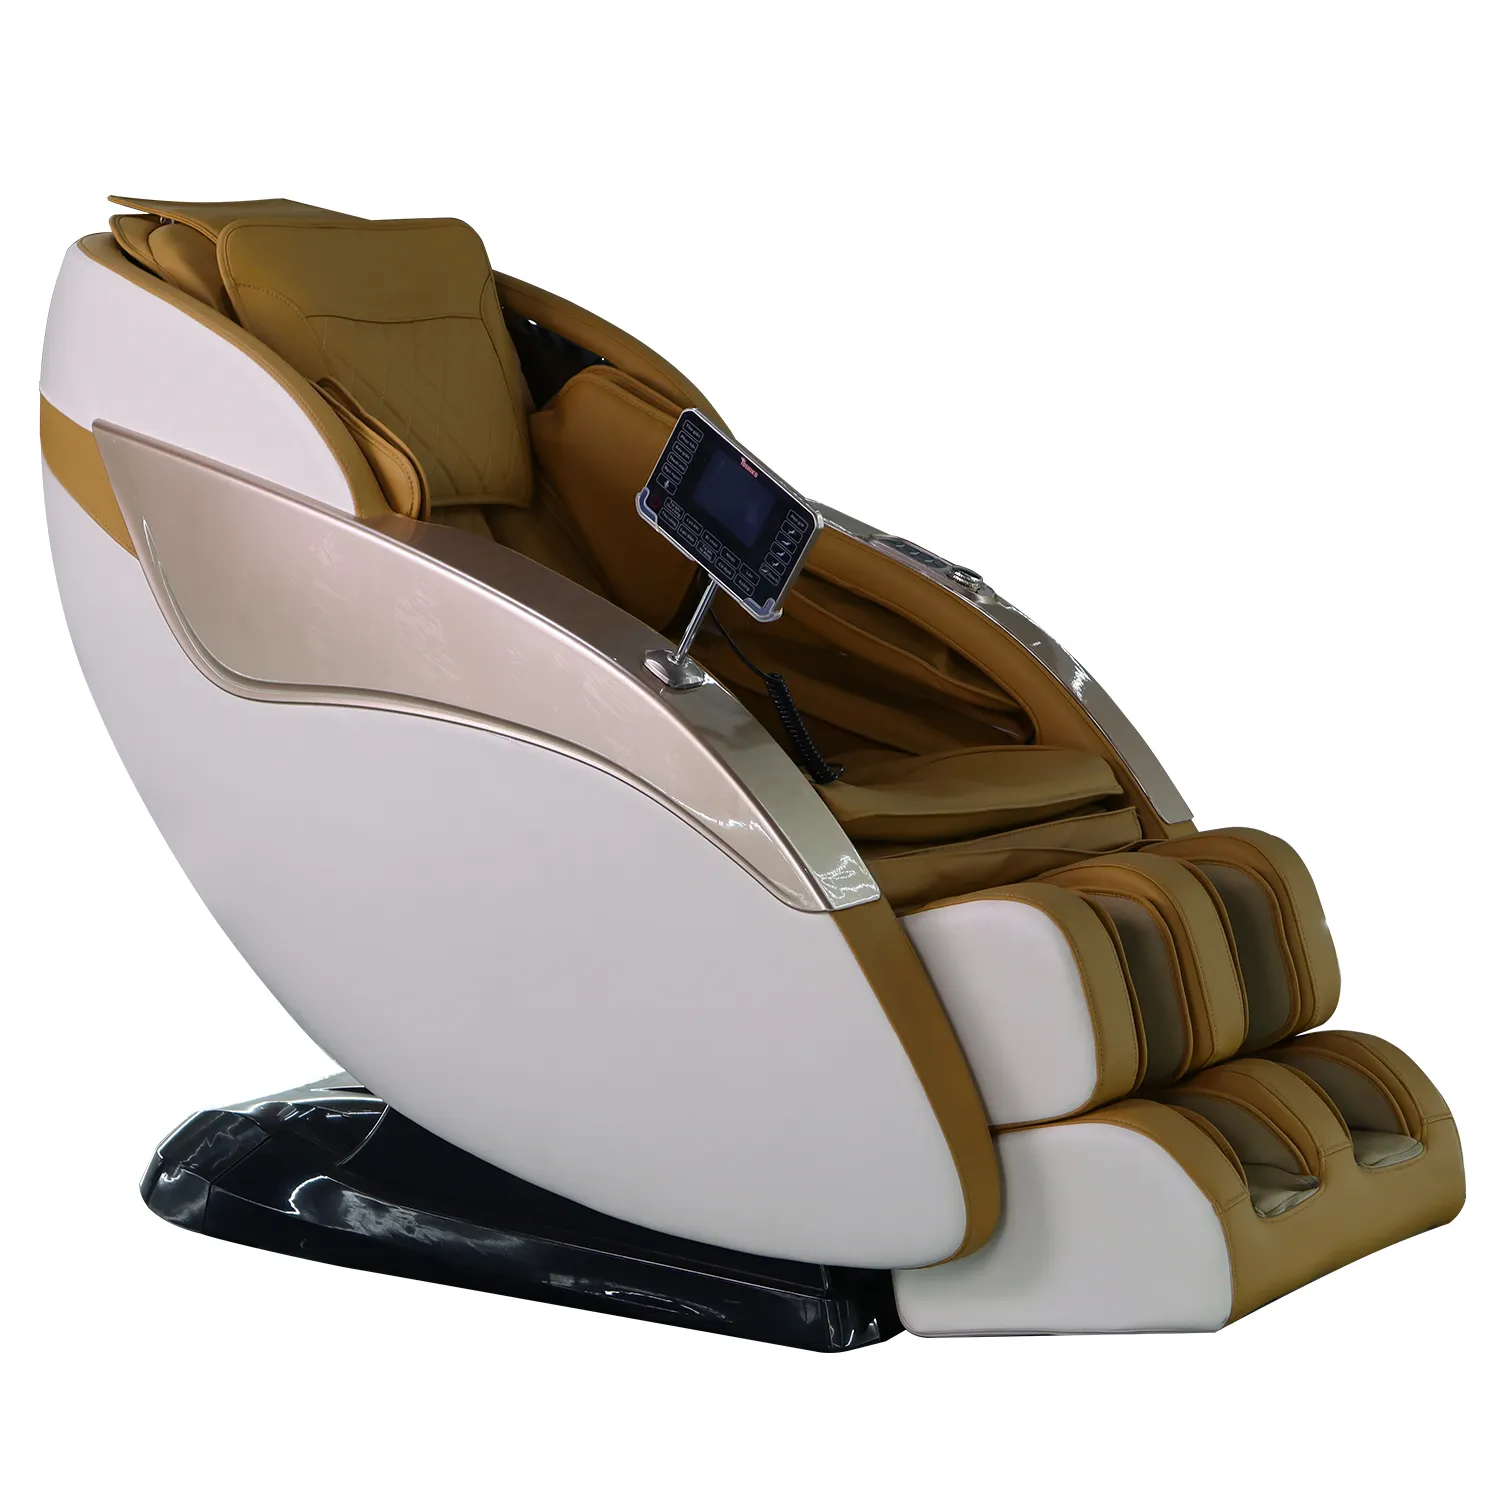 3D ghế massage không trọng lực Con lăn mô sâu giá rẻ SL theo dõi SL 4D thẻ hoạt động VD nhóm gỗ Rocker ghế massage